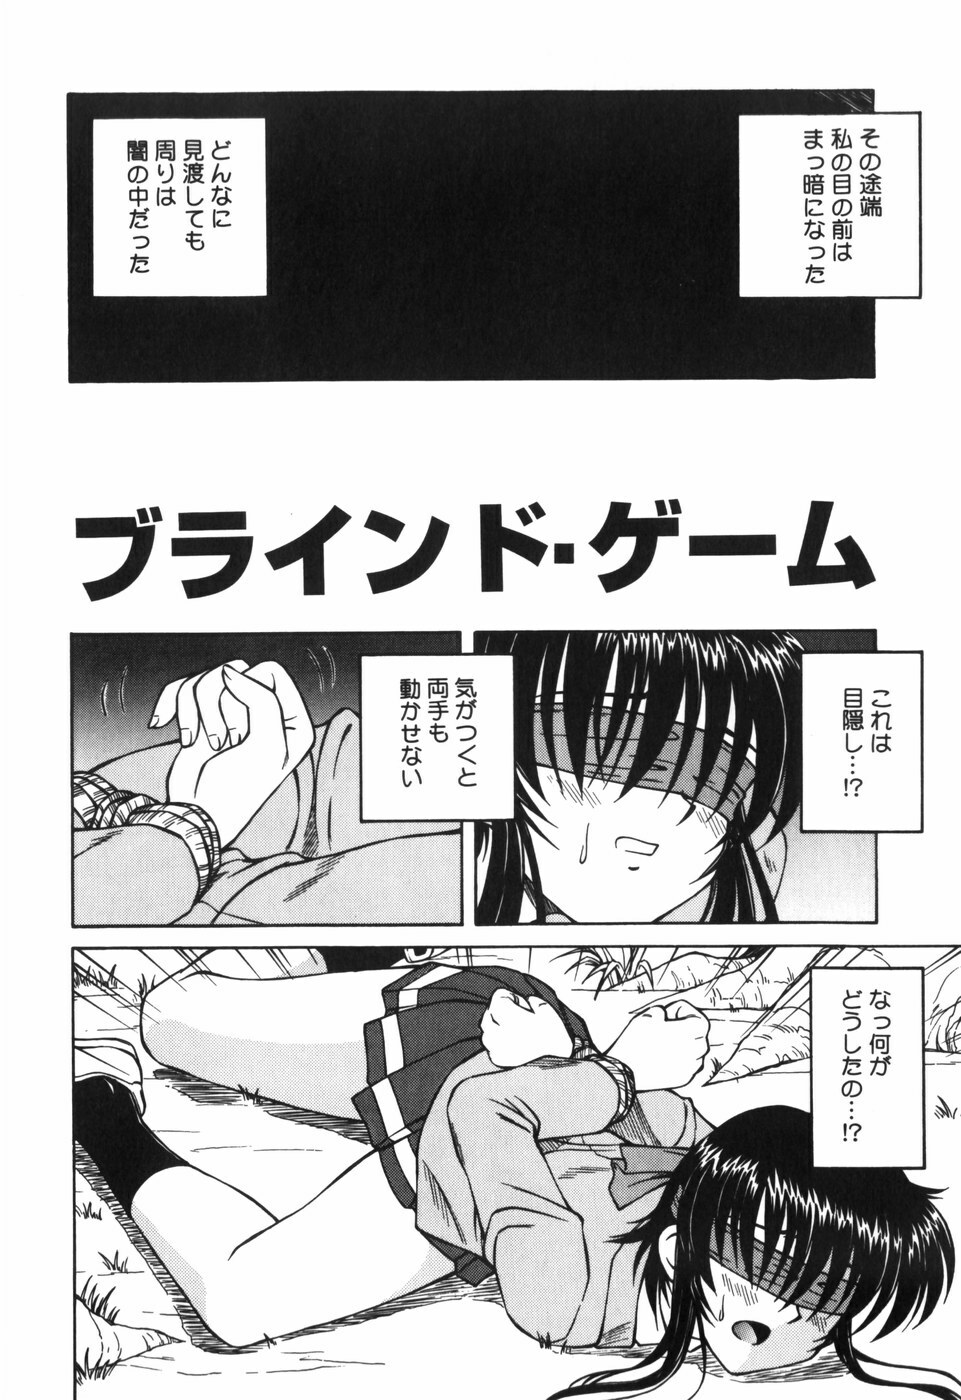 [Spark Utamaro] Shiru o Suu Nawa page 42 full